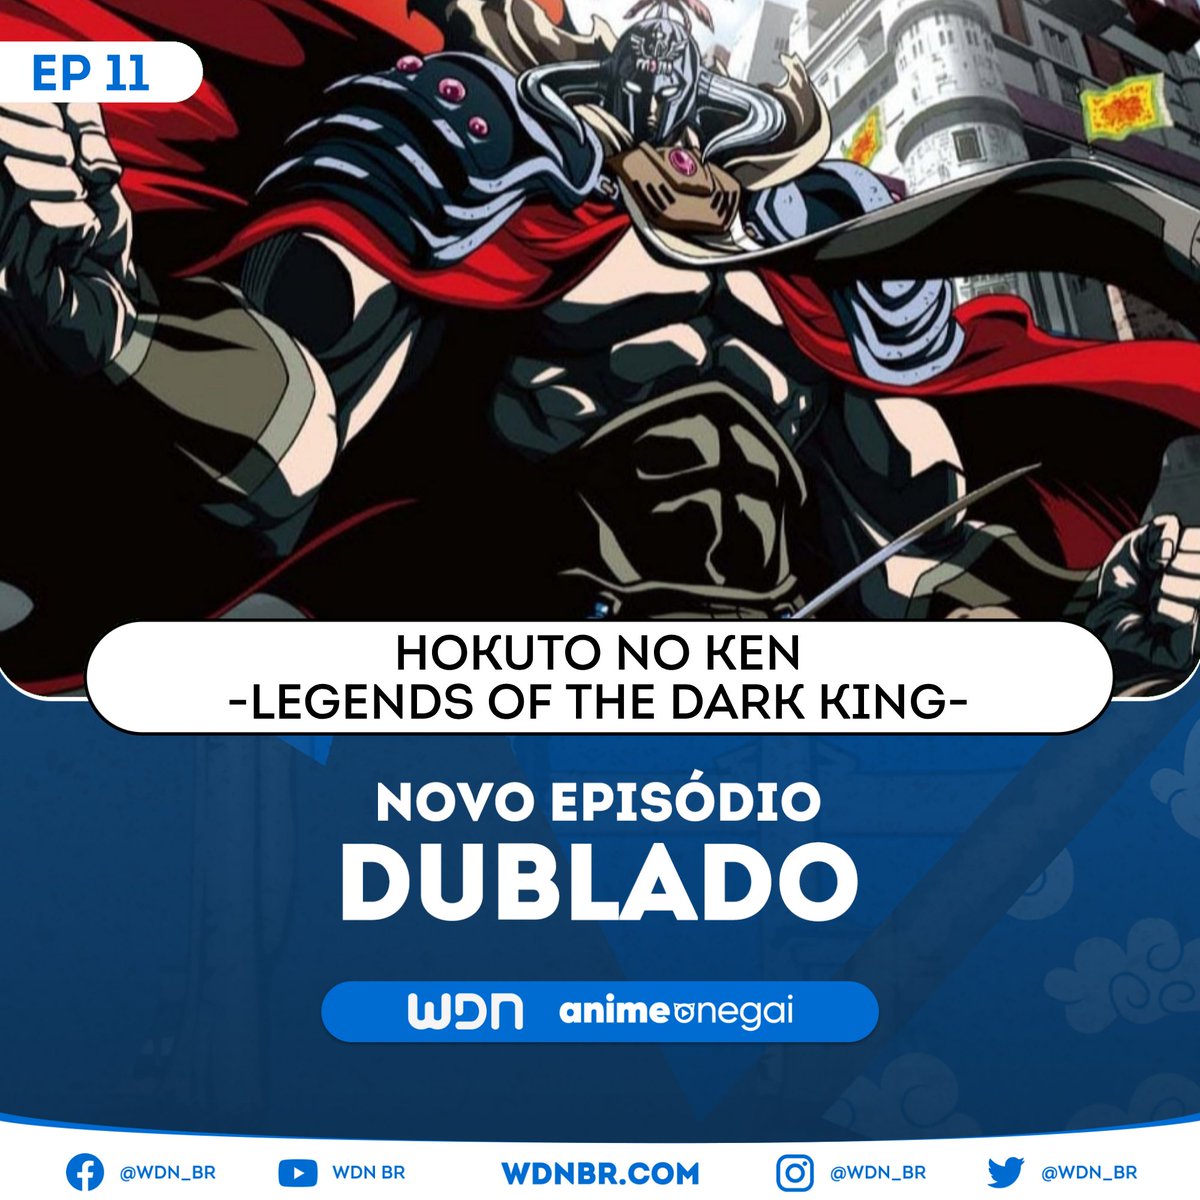 🌸 NOVO EPISÓDIO DUBLADO DISPONÍVEL: 

🌺 Hokuto no Ken ~Legends of the Dark King~ - Episódio 11

💙 Assista na Anime Onegai.

🔹 Vote em sua dublagem favorita: wdnbr.com/p/votacoes.html